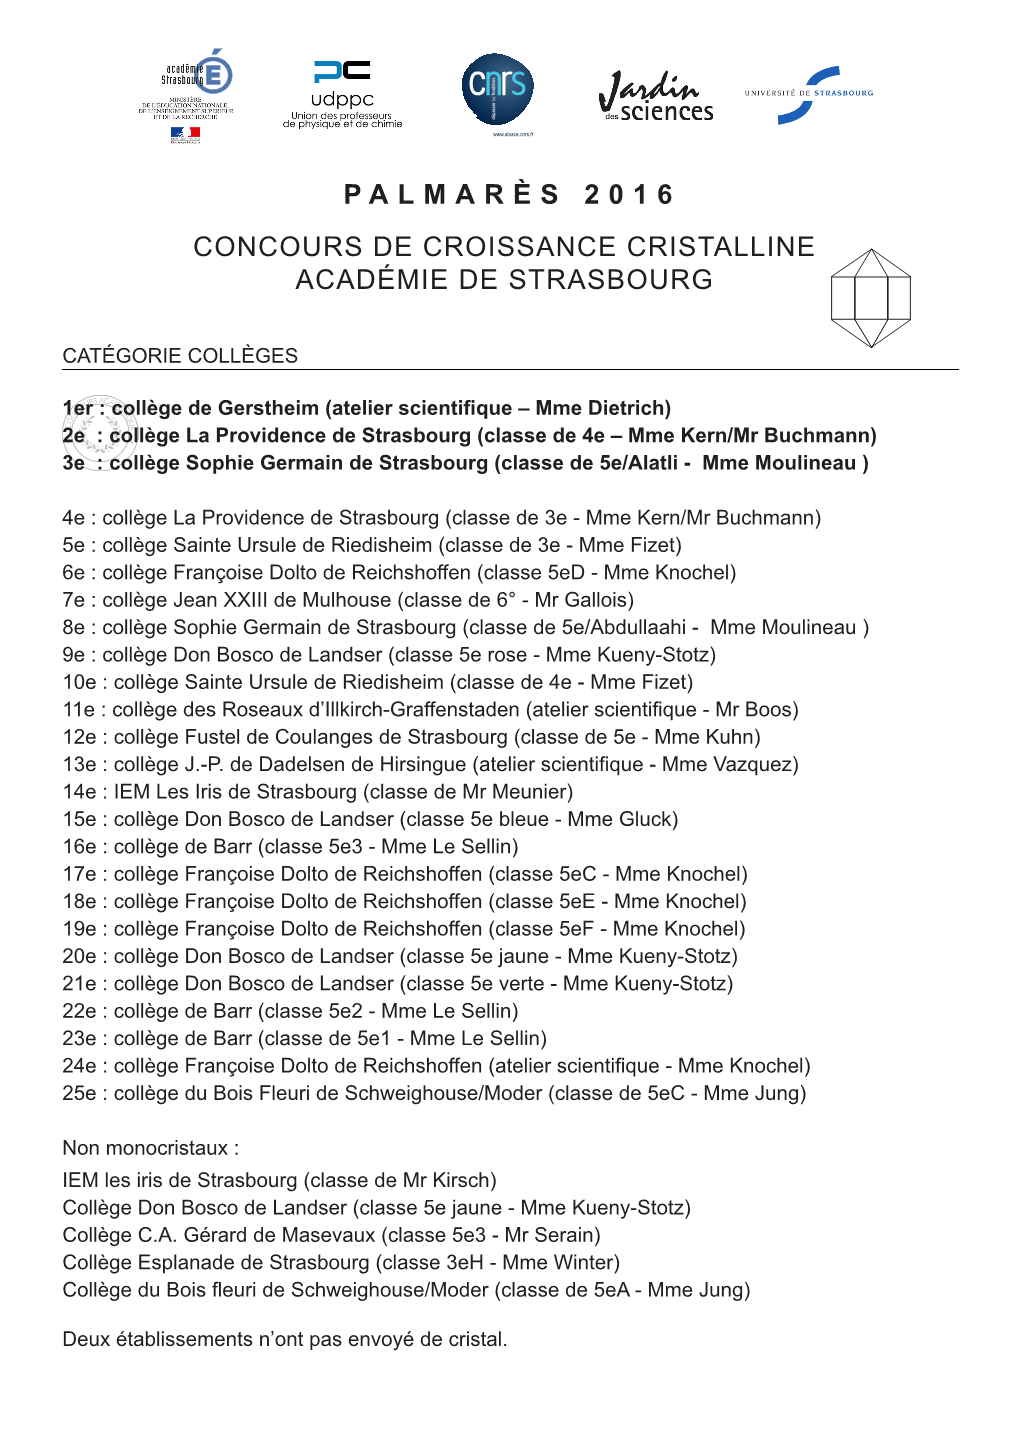 Palmarès 2016 Concours De Croissance Cristalline Académie De Strasbourg